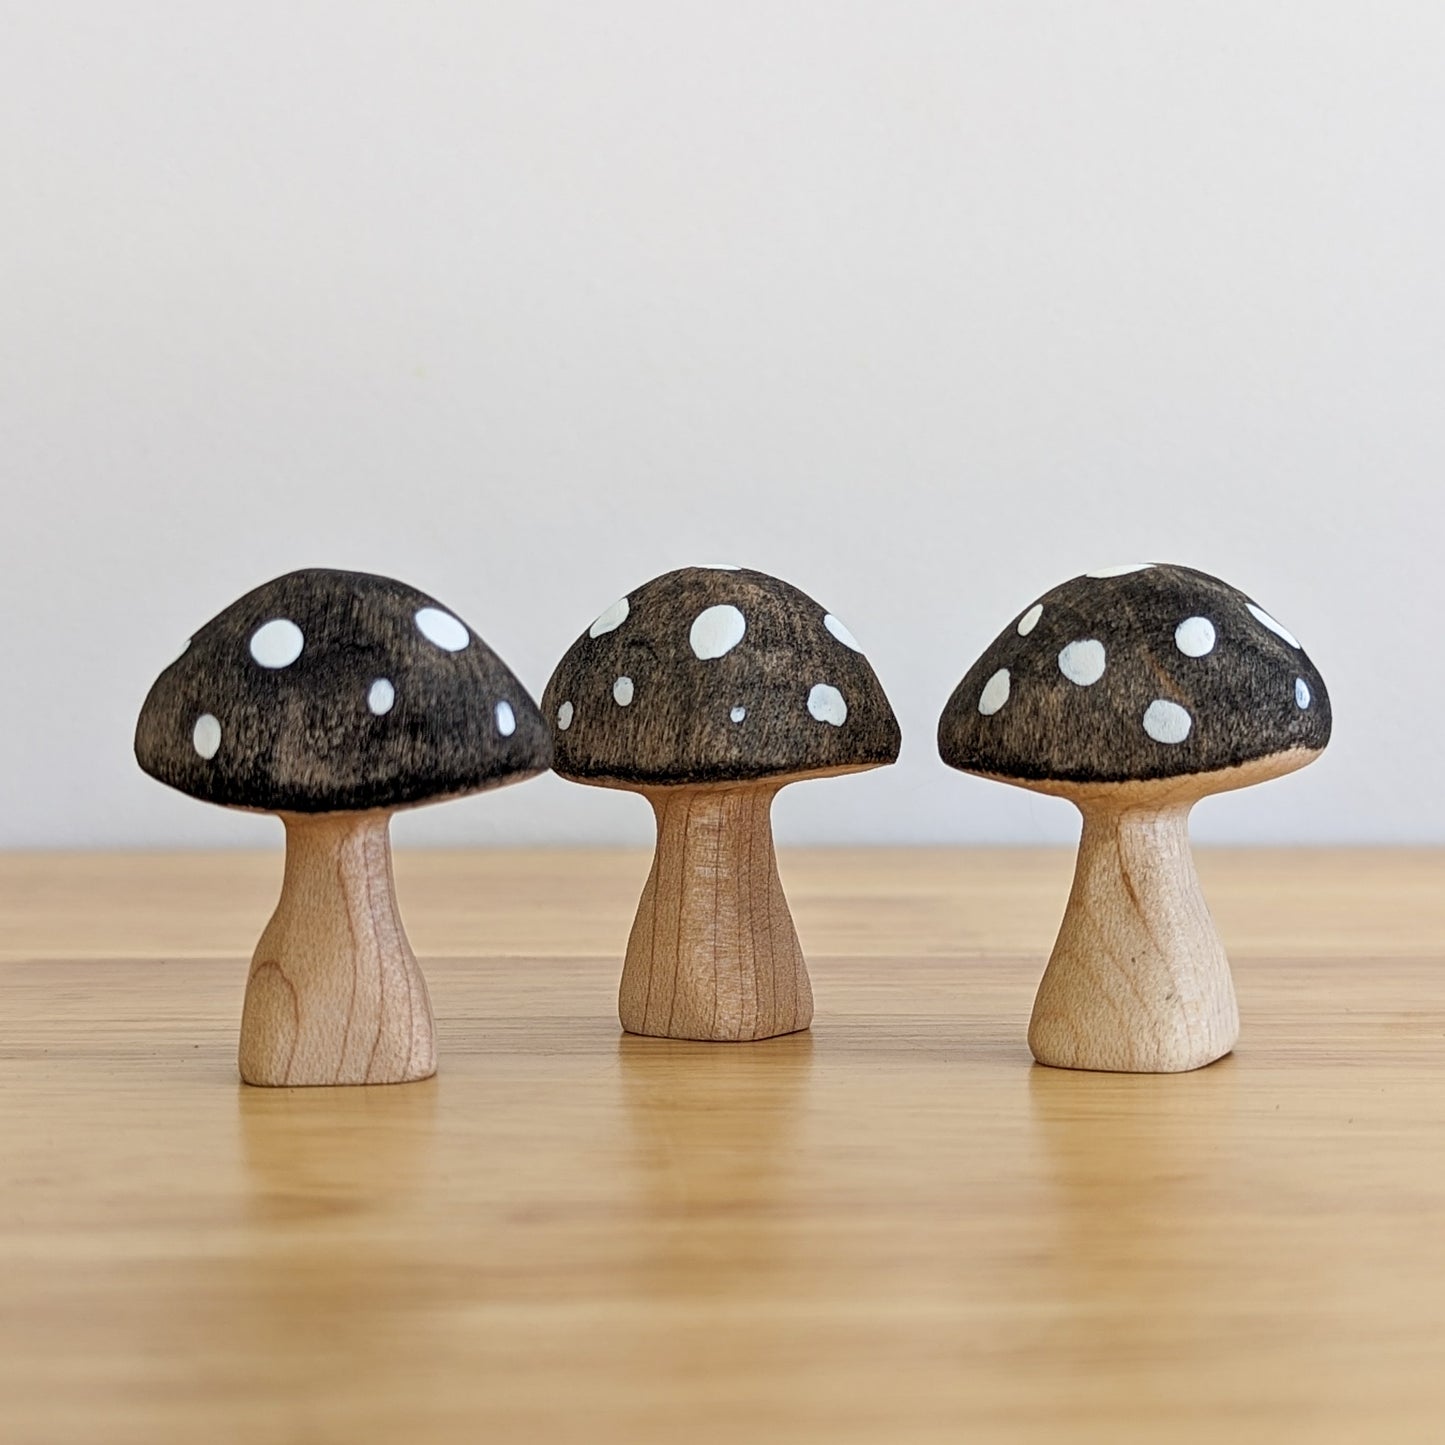 Black Mushroom Wooden Toy